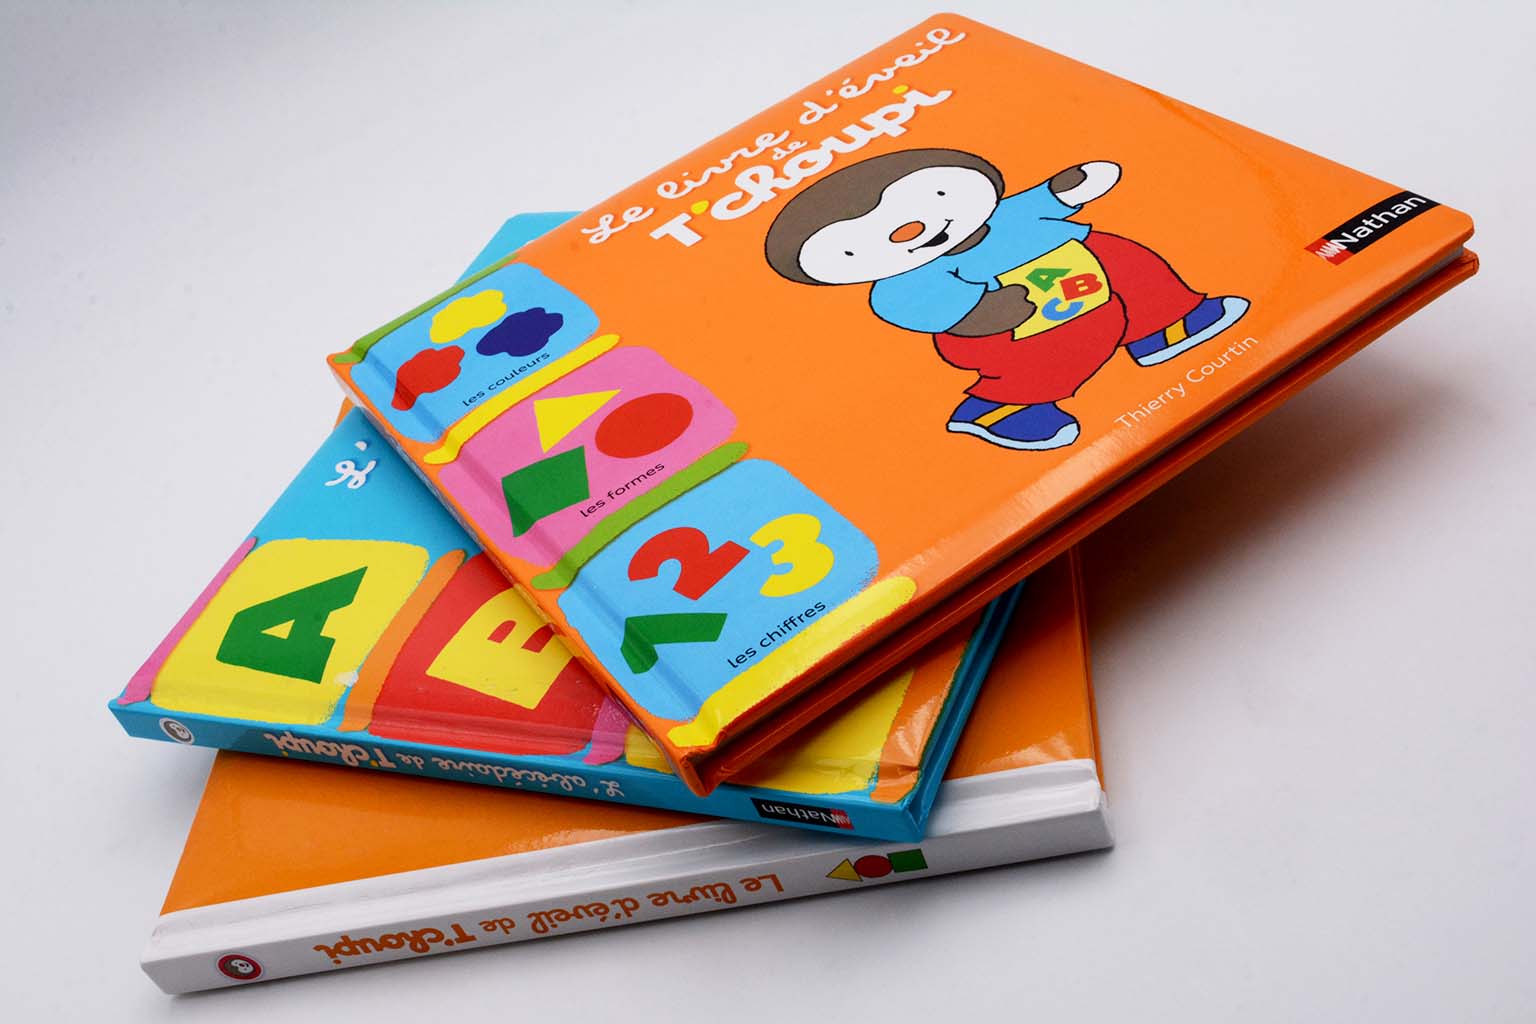 Libri per bambini | Legatoria Editoriale Giovanni Olivotto L.E.G.O. S.p.A. – https://www.legogroup.com